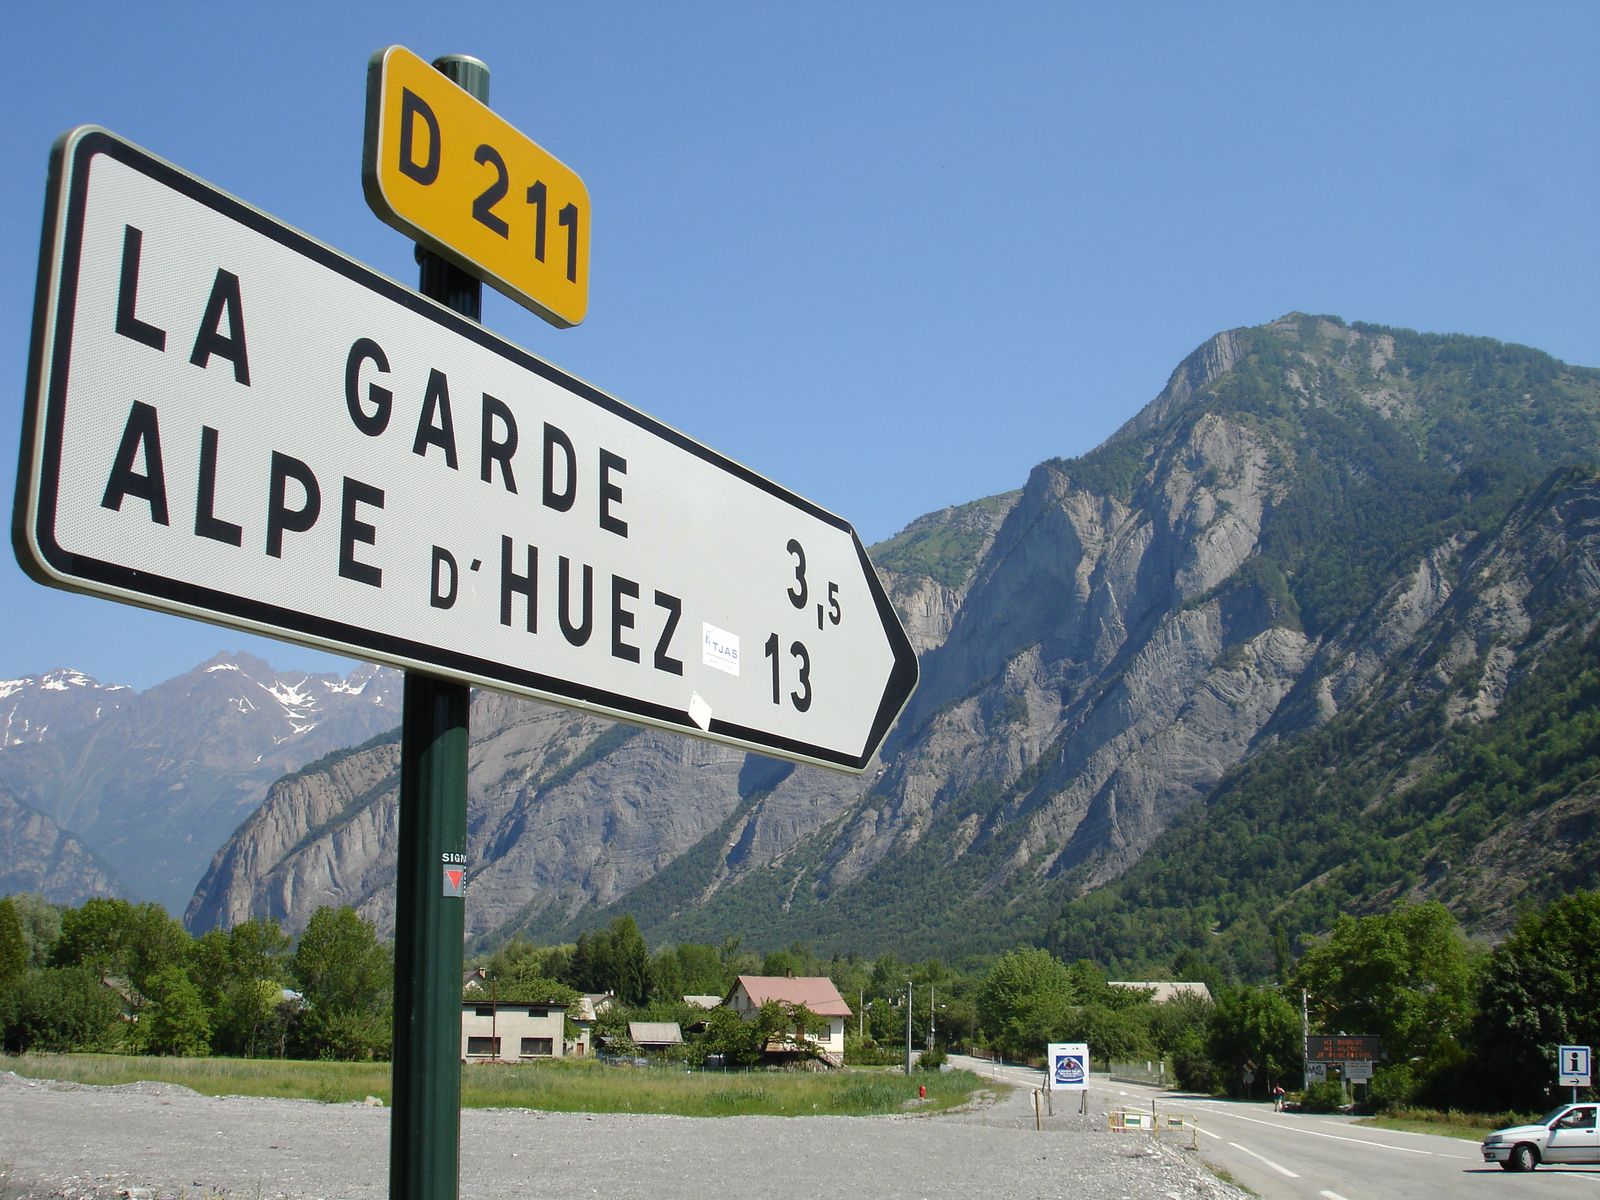 Road sign for Alpe d'Huez